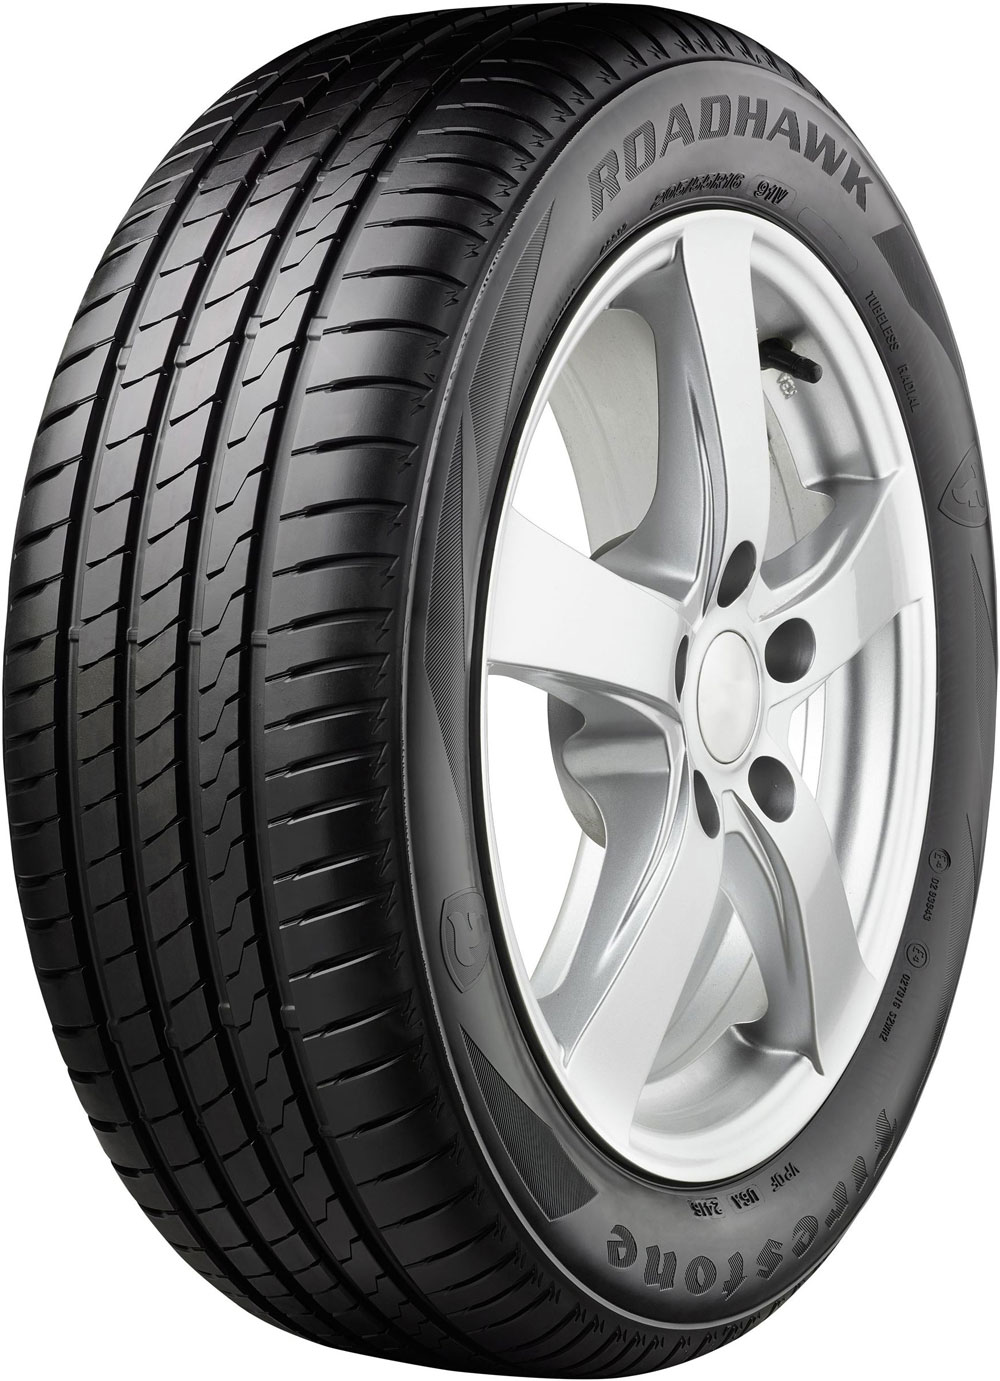 Автомобилни гуми FIRESTONE ROADHAWK XL XL DOT 2020 245/40 R18 97Y